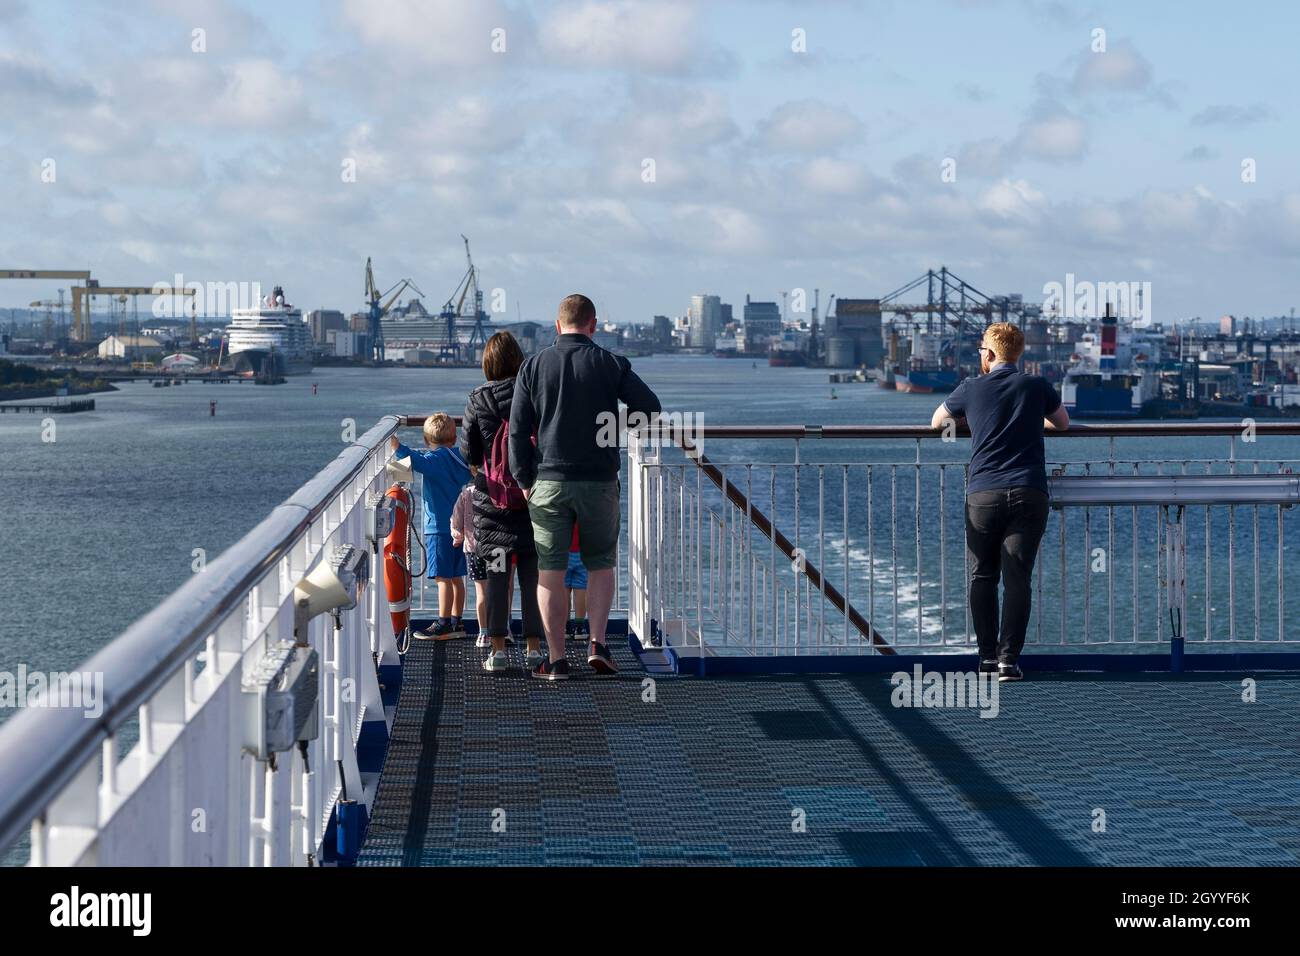 Les passagers du passage de jour de la ligne Stena Belfast à Liverpool Birkenhead observent le départ du bateau de Belfast Port Irlande du Nord Banque D'Images